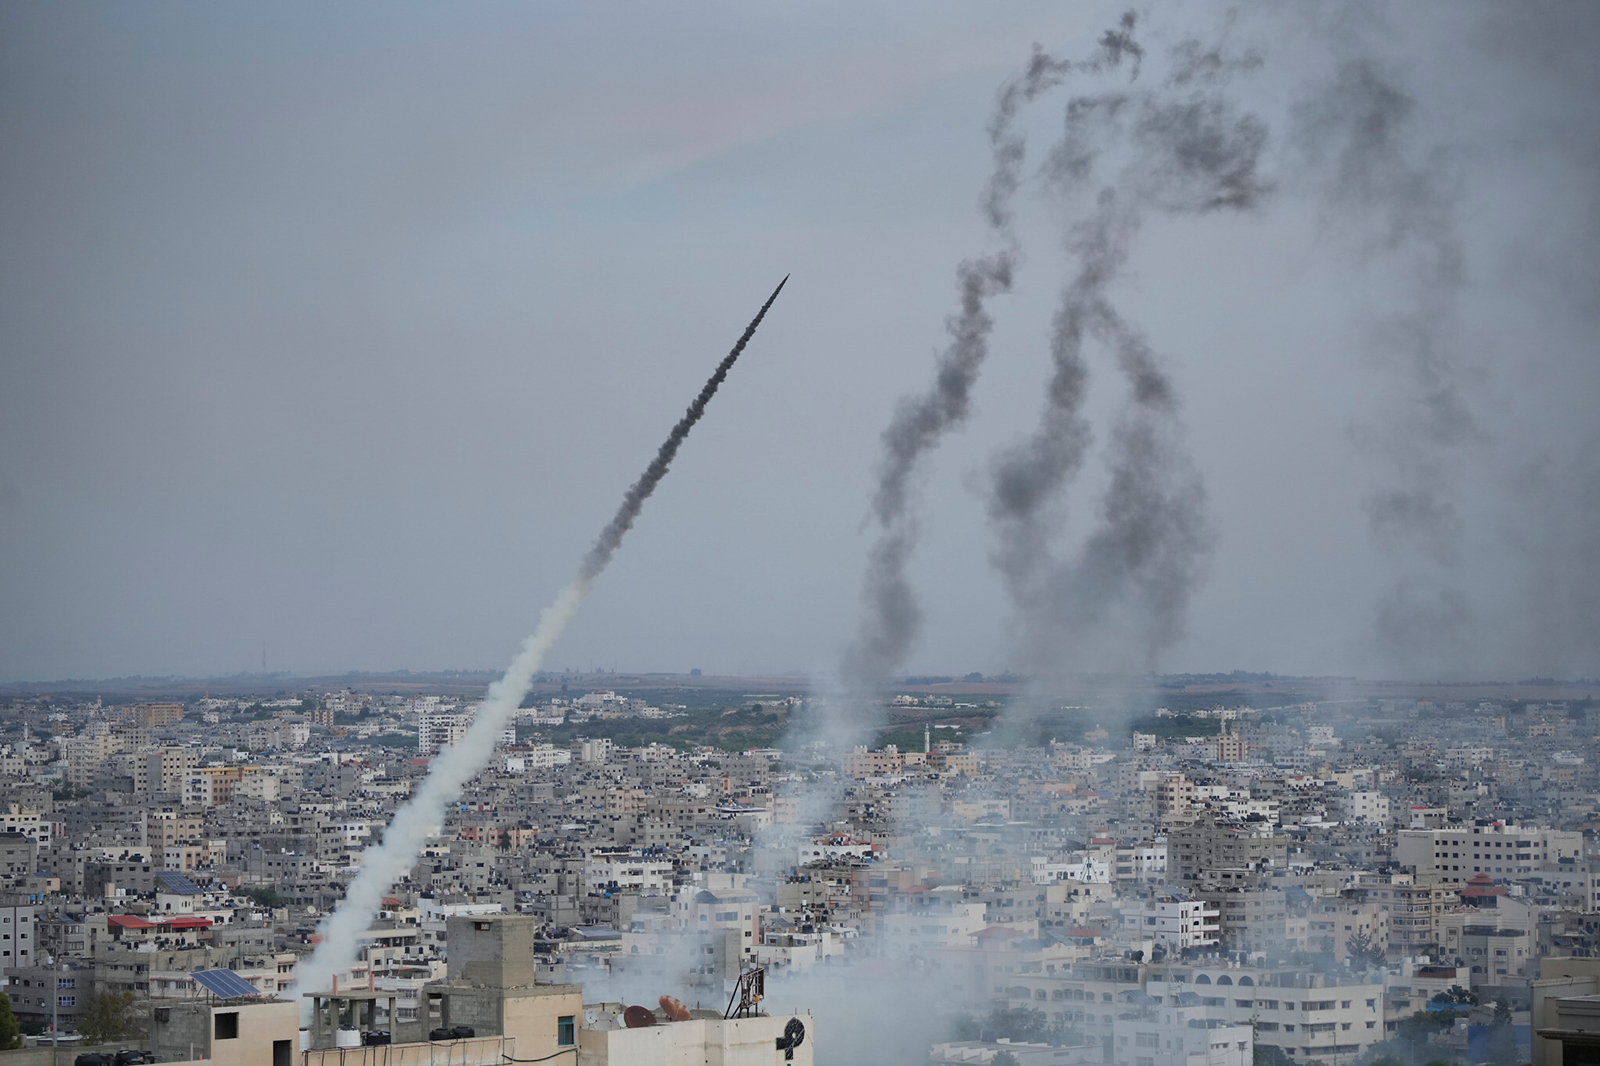 وكالة "رويترز" تنفي تقارير عن هجوم صاروخي وشيك على إسرائيل